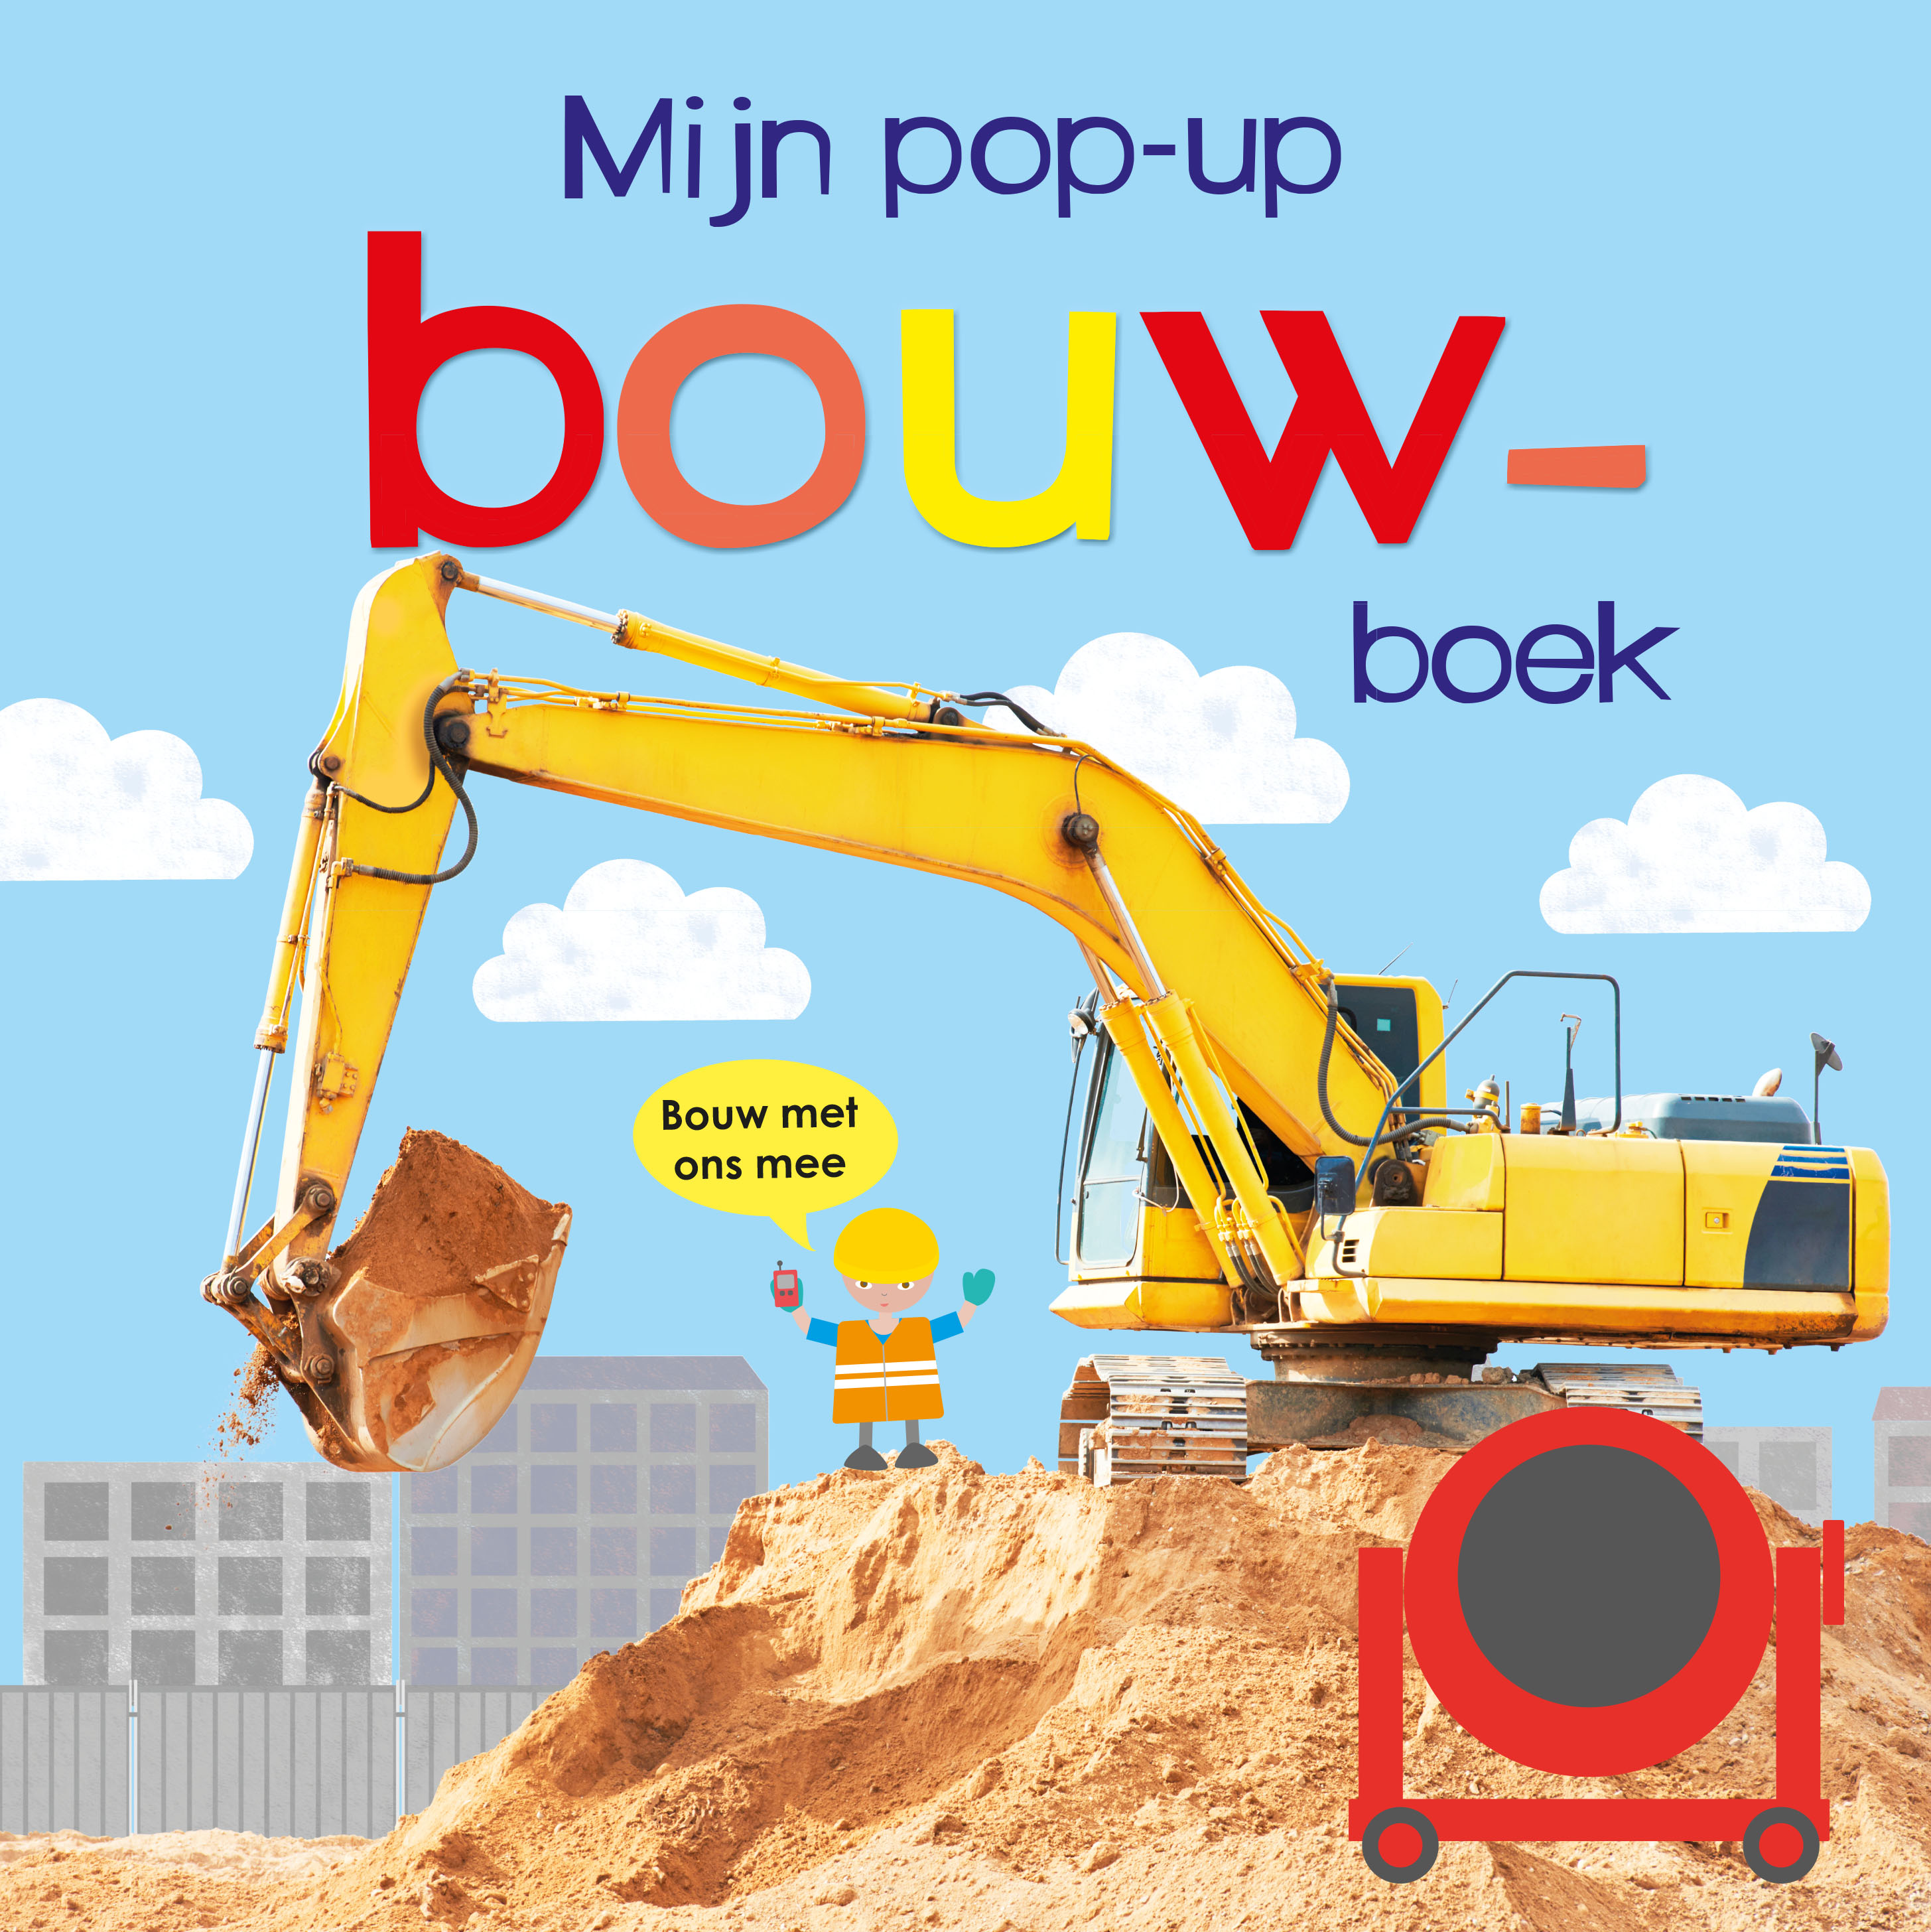 BNBPOP002 Mijn pop-up bouwboek